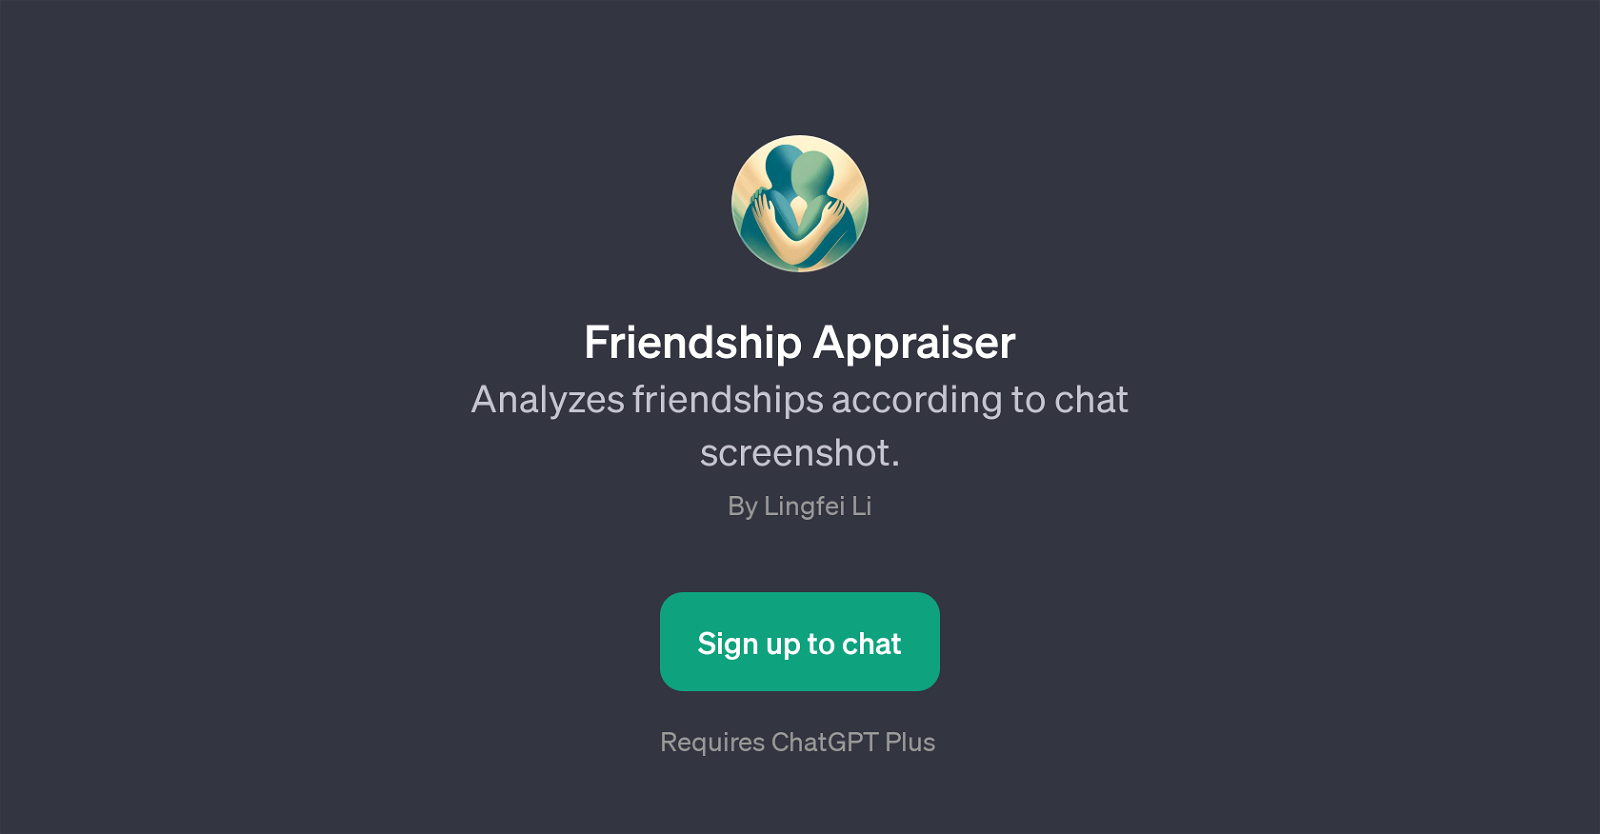 Friendship Appraiser website